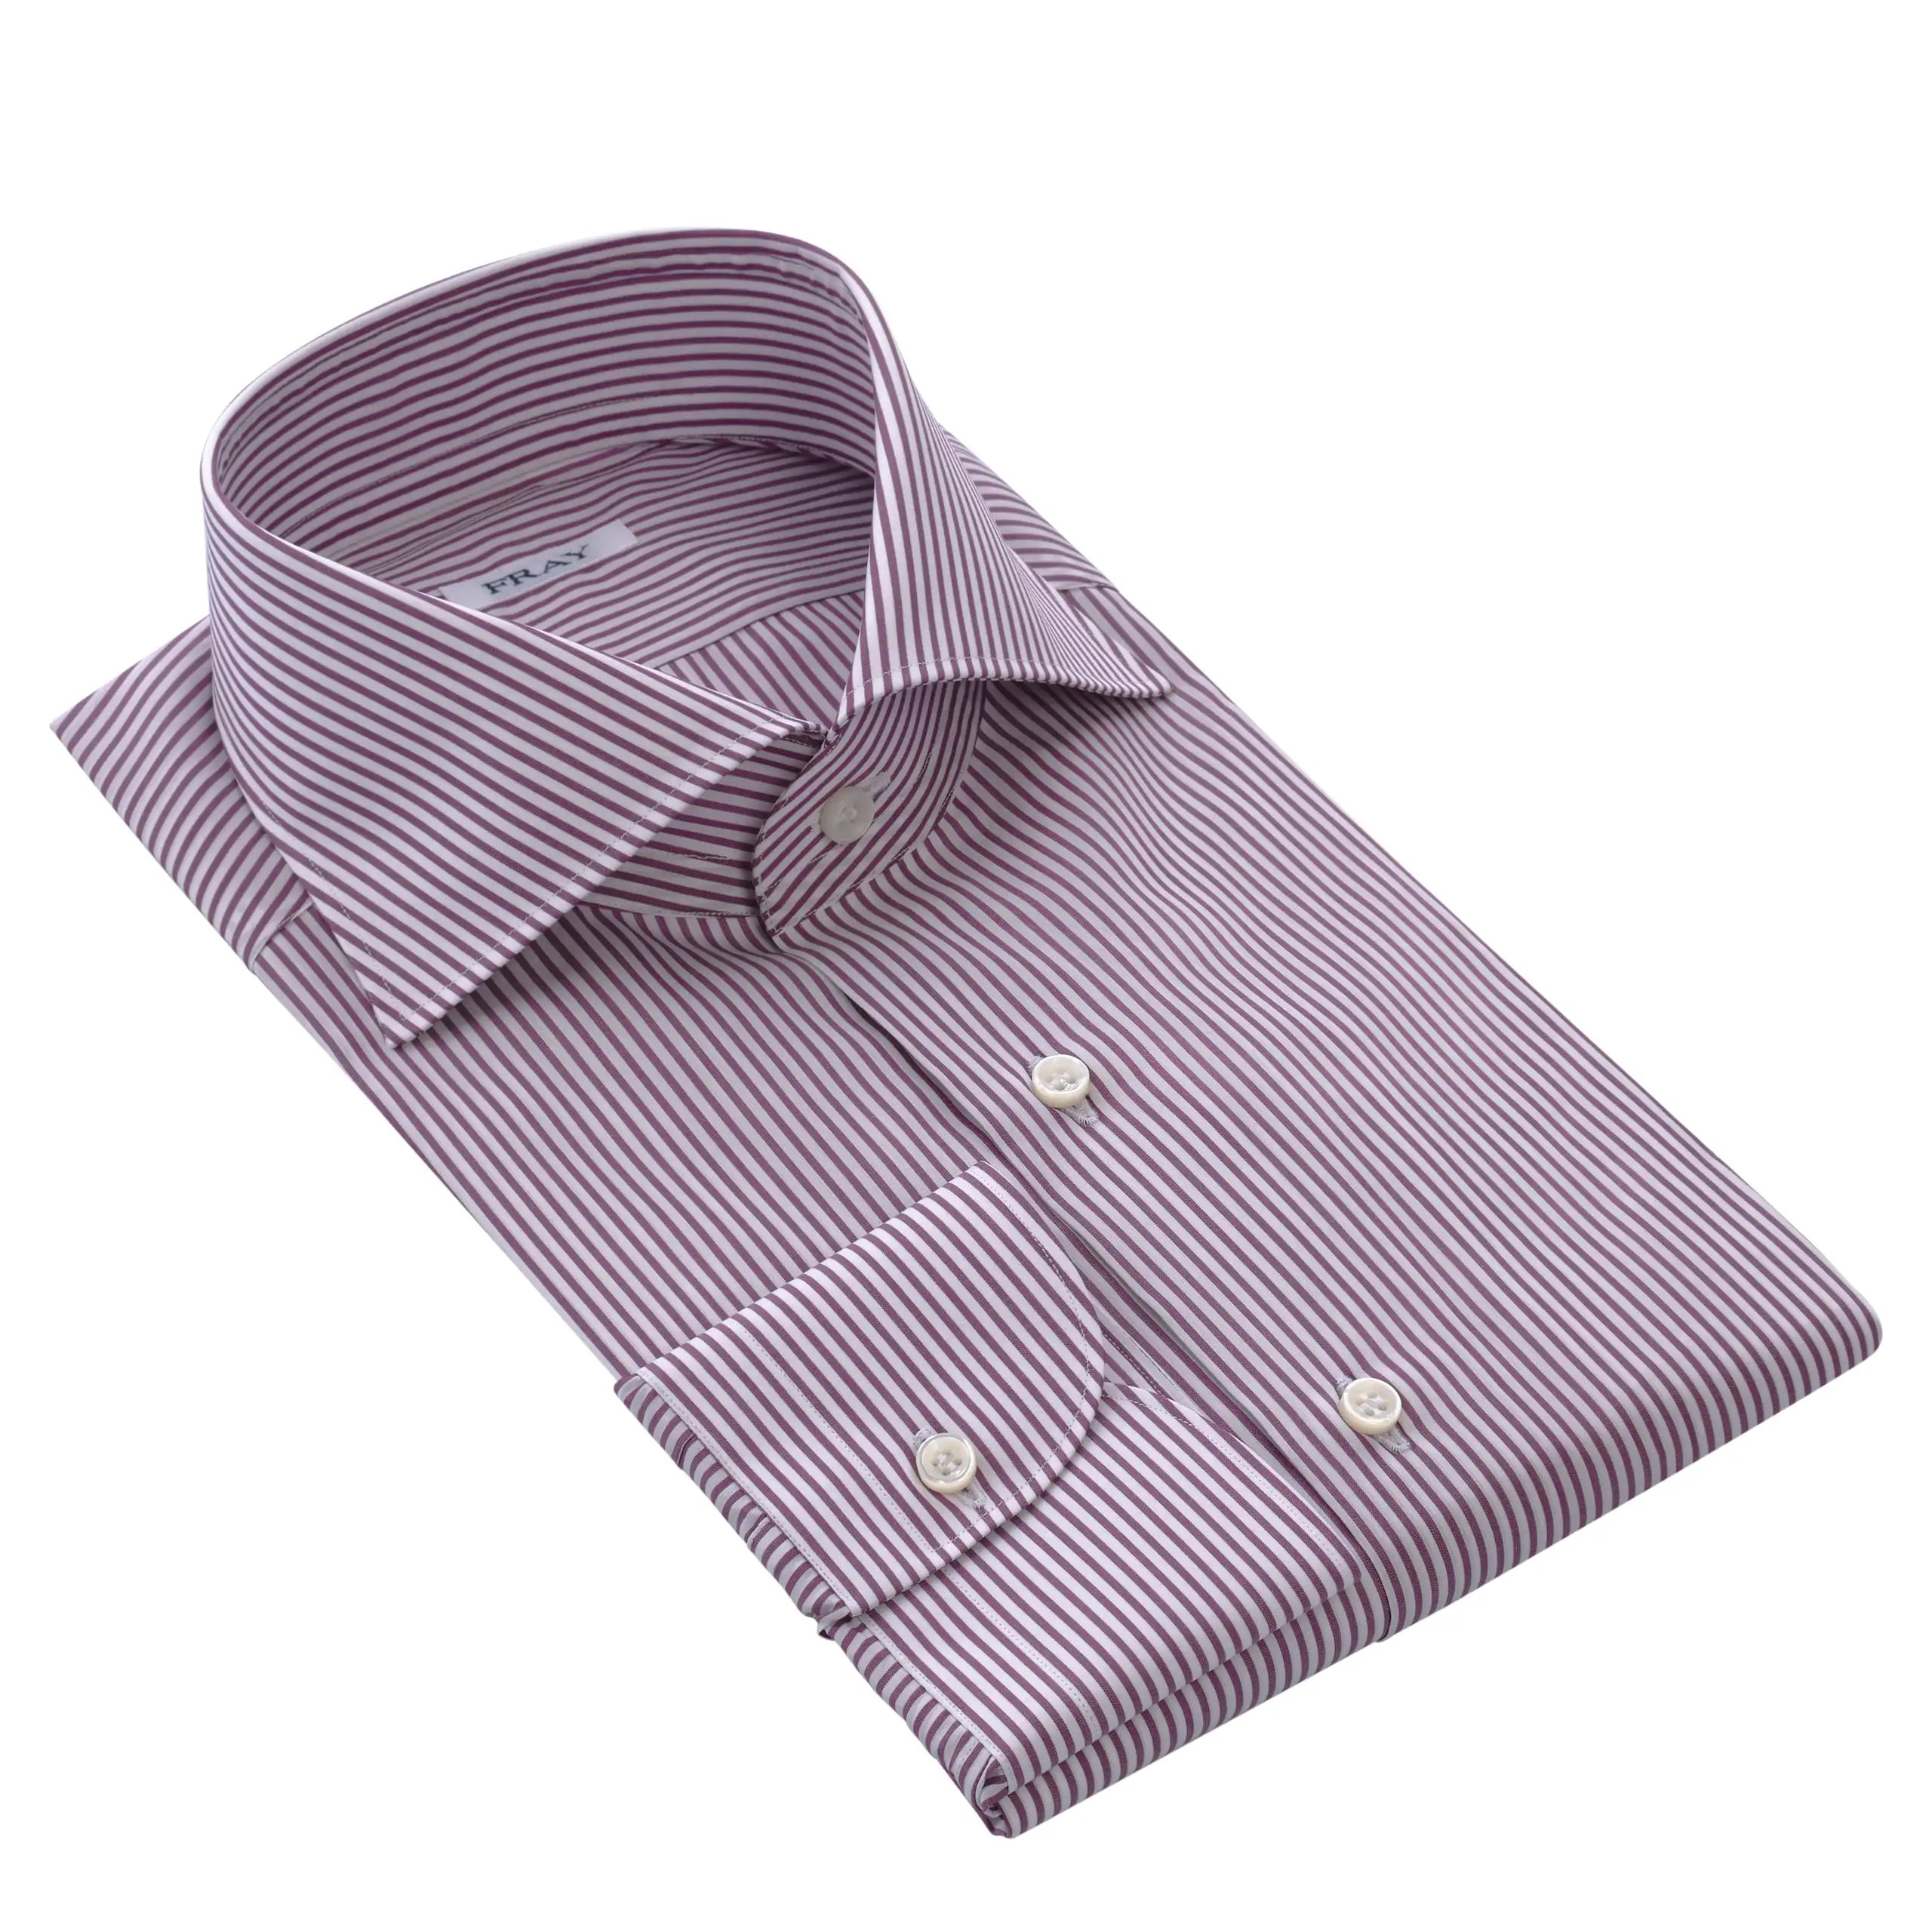 Fein gestreiftes Hemd in Violett und Weiß